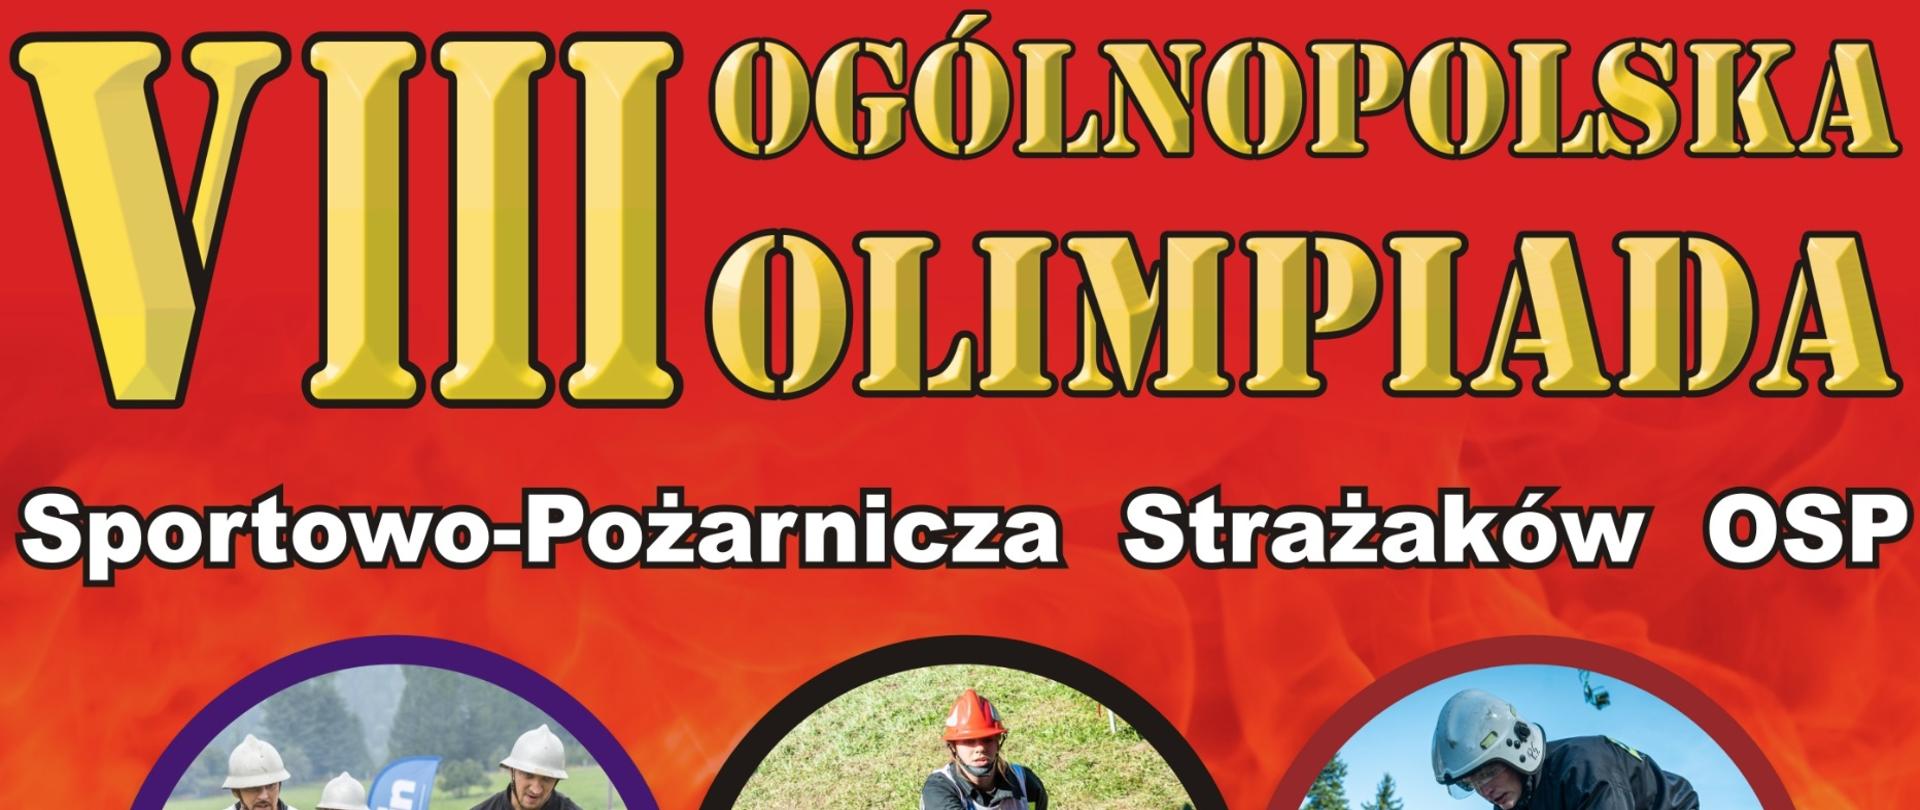 Plakat VIII Ogólnopolska Olimpiada Sportowo-Pożarnicza Strażaków OSP